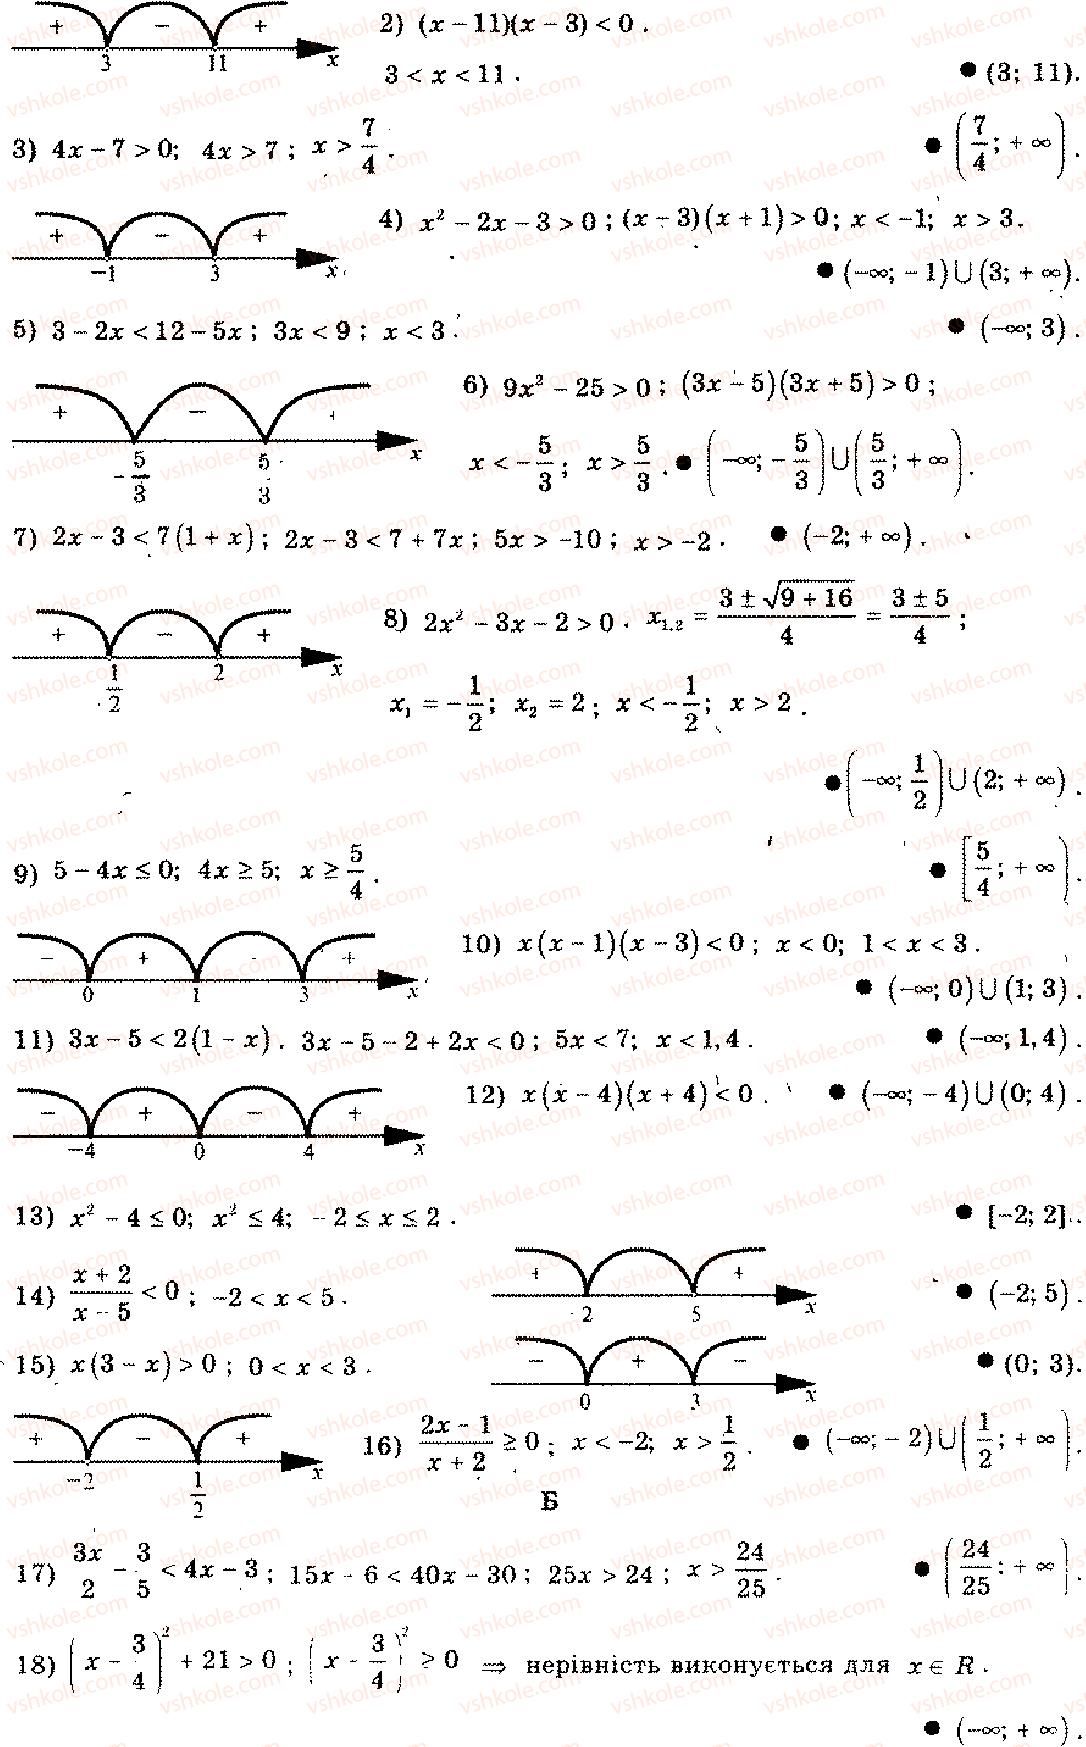 11-algebra-mi-shkil-zi-slepkan-os-dubinchuk-2006--rozdil-15-povtorennya-kursu-algebri-osnovnoyi-shkoli-4-3-rnd1801.jpg